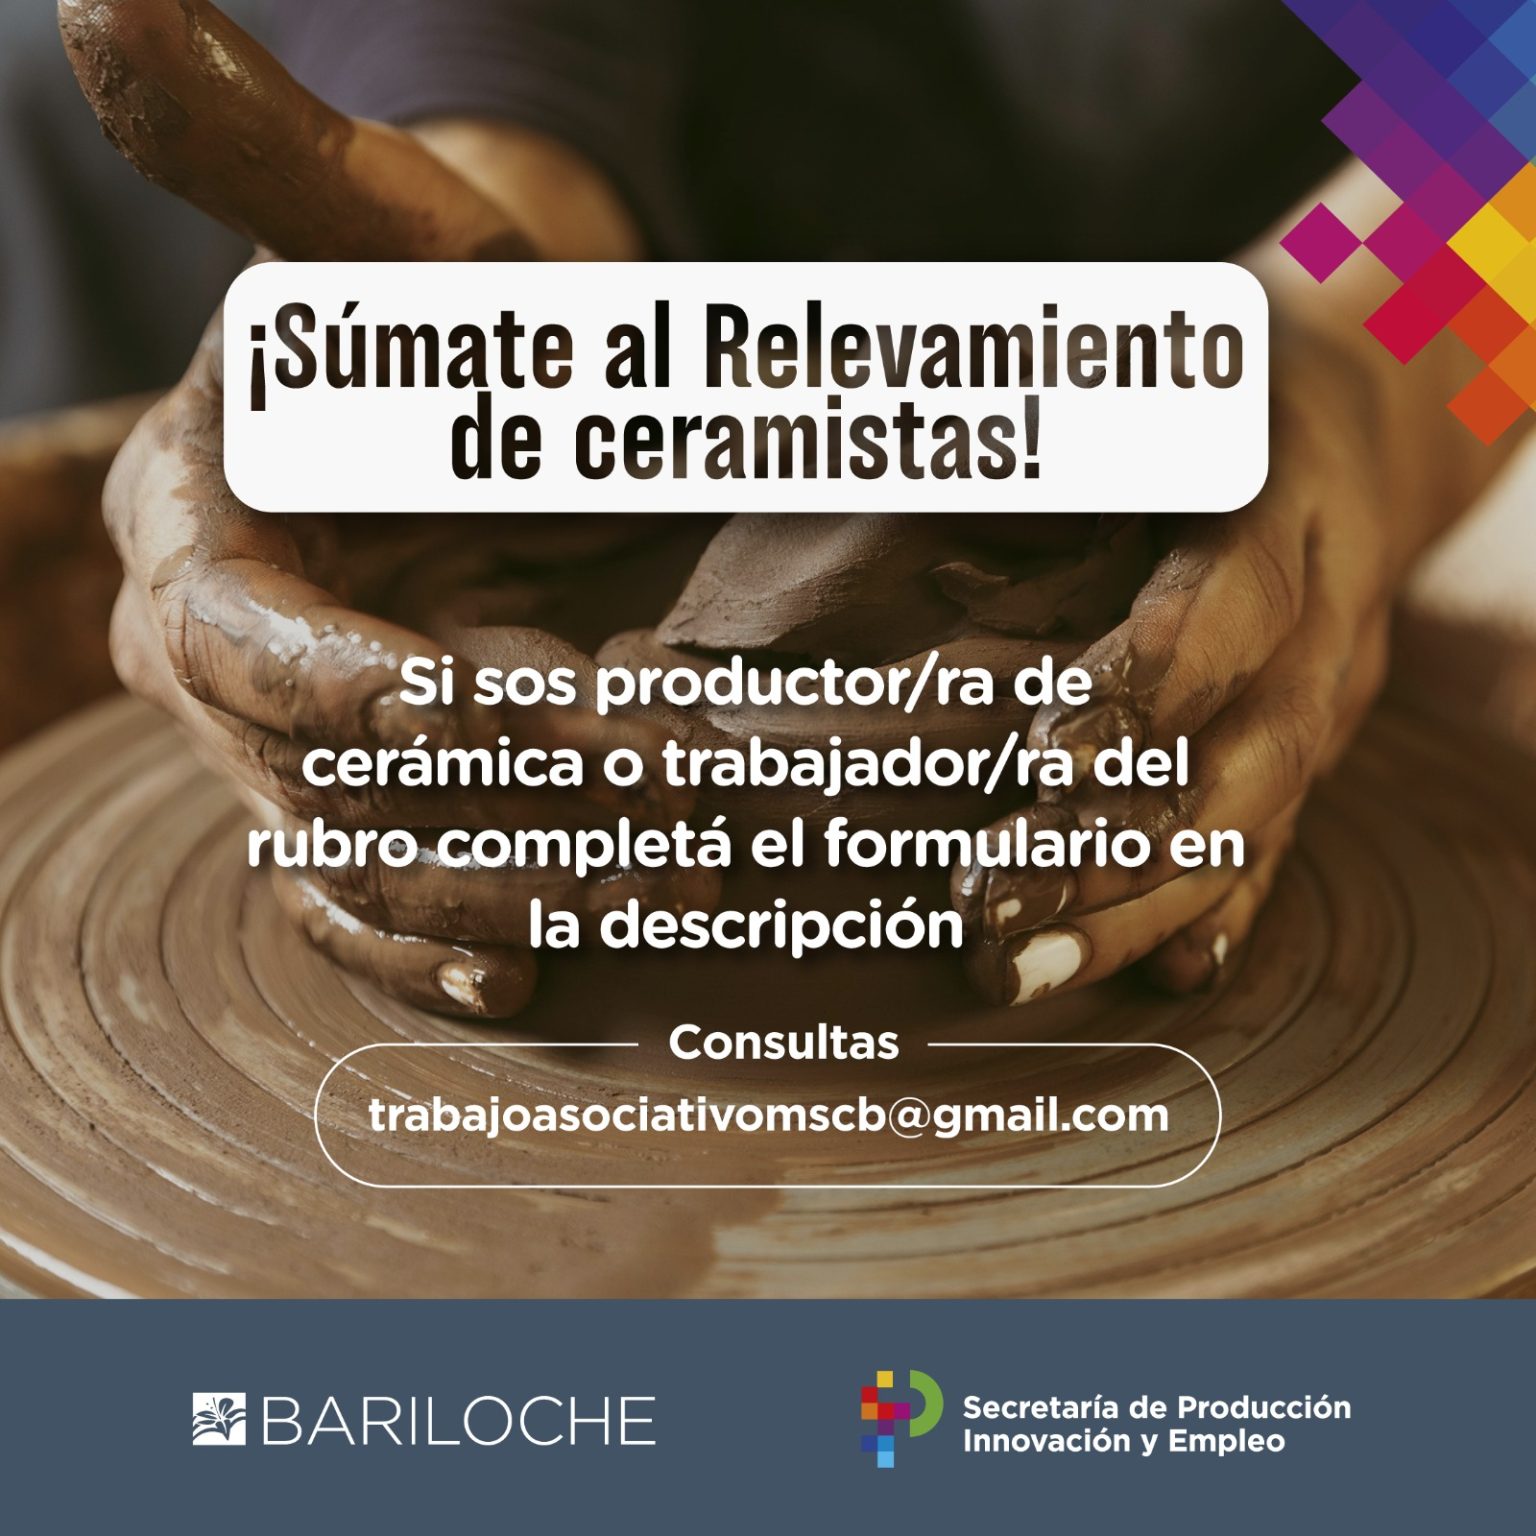 Continúa el Relevamiento para Ceramistas en Bariloche